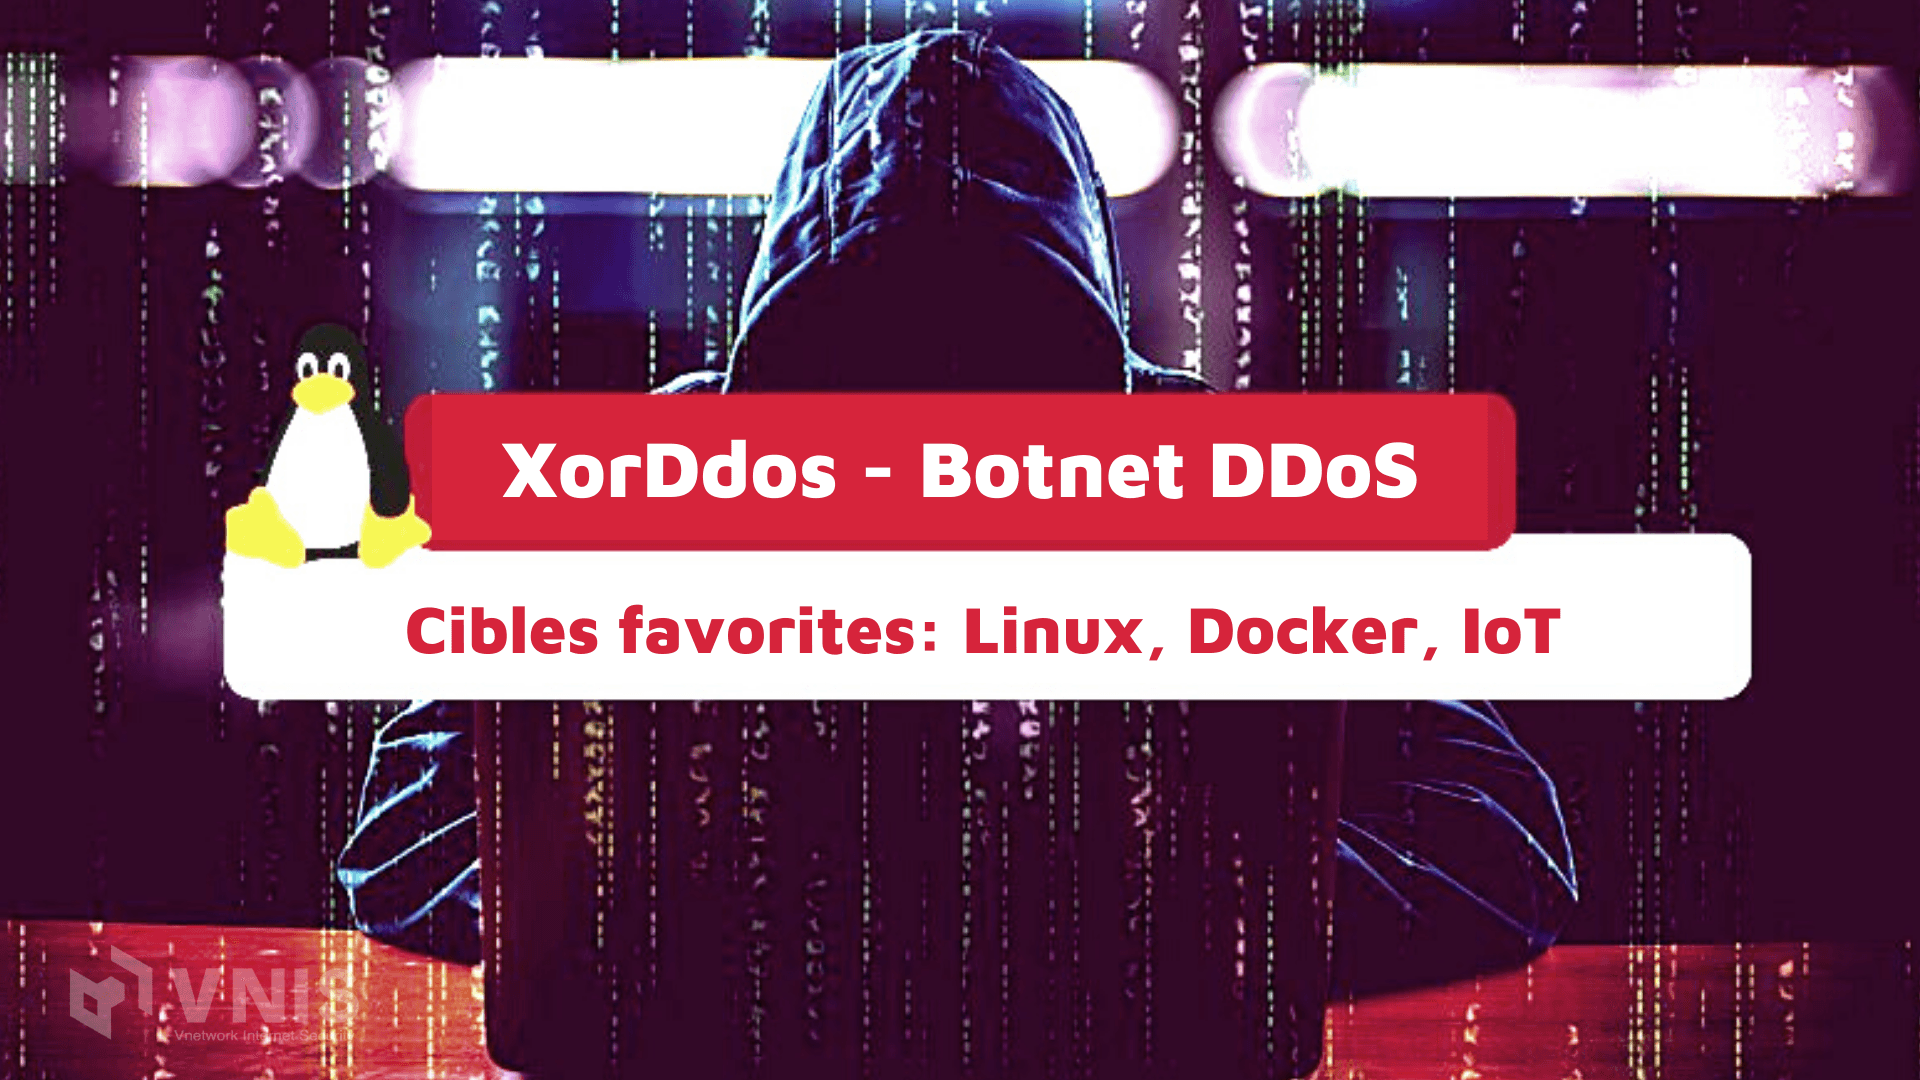 What is the XorDdos botnet and how to anti DDoS botnet XorDdos